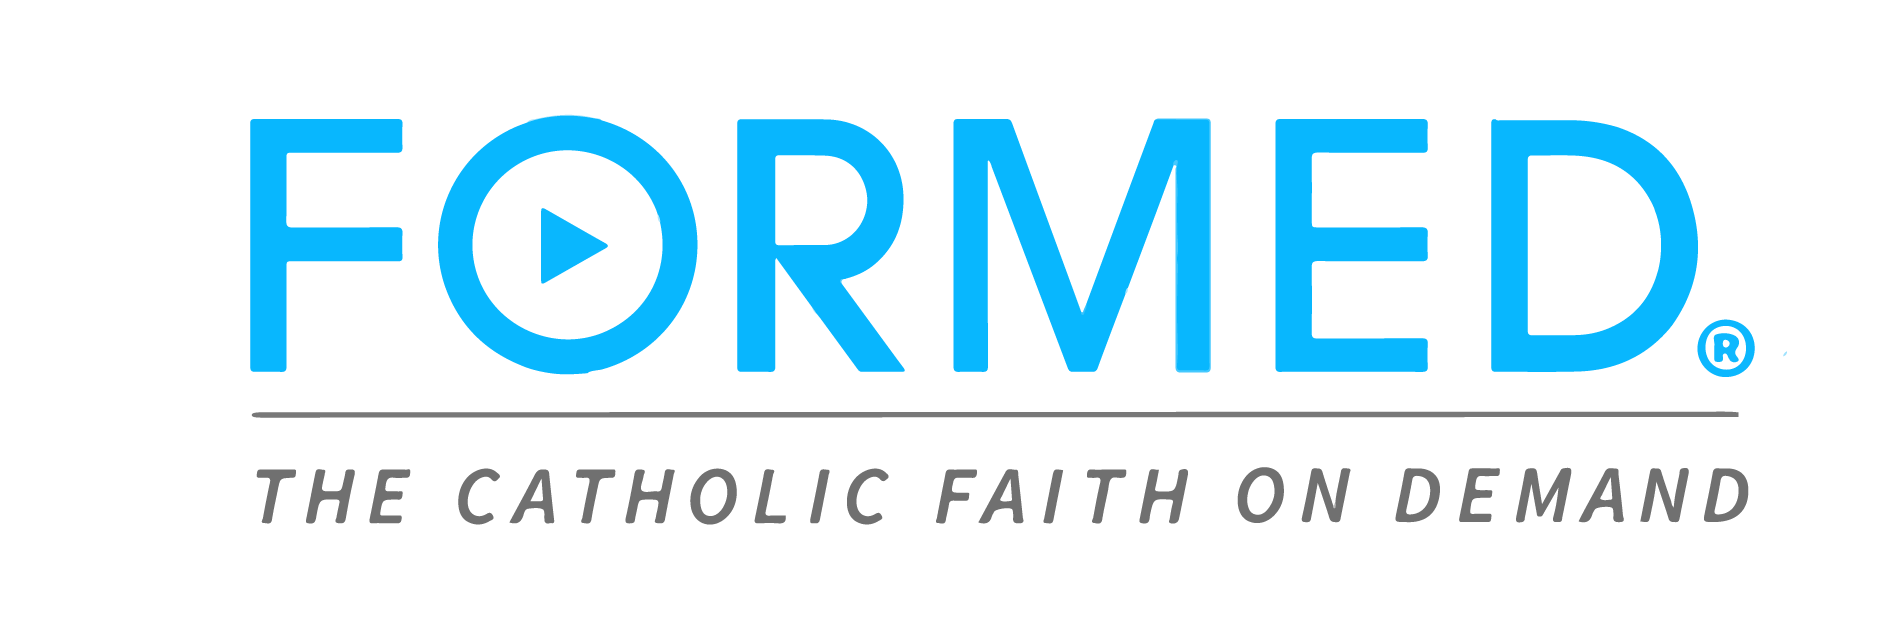 Formed, The Catholic Faith on Demand